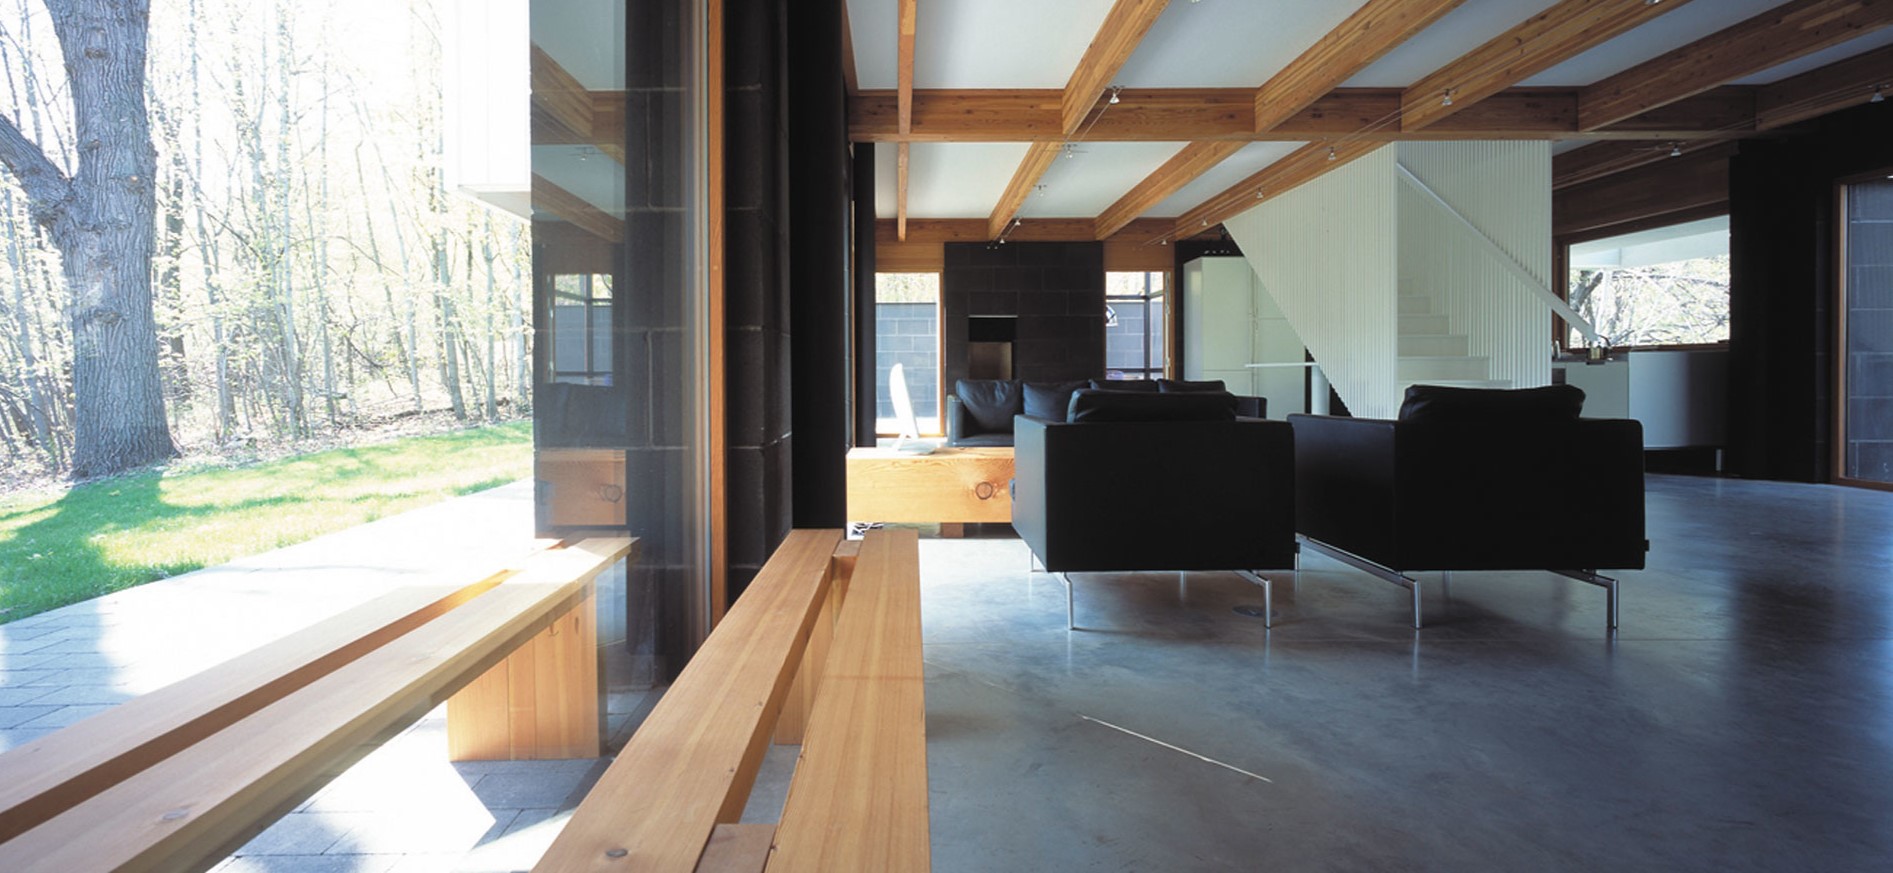 Деревянные потолочные балки идеально дополнят интерьер в стиле лофт